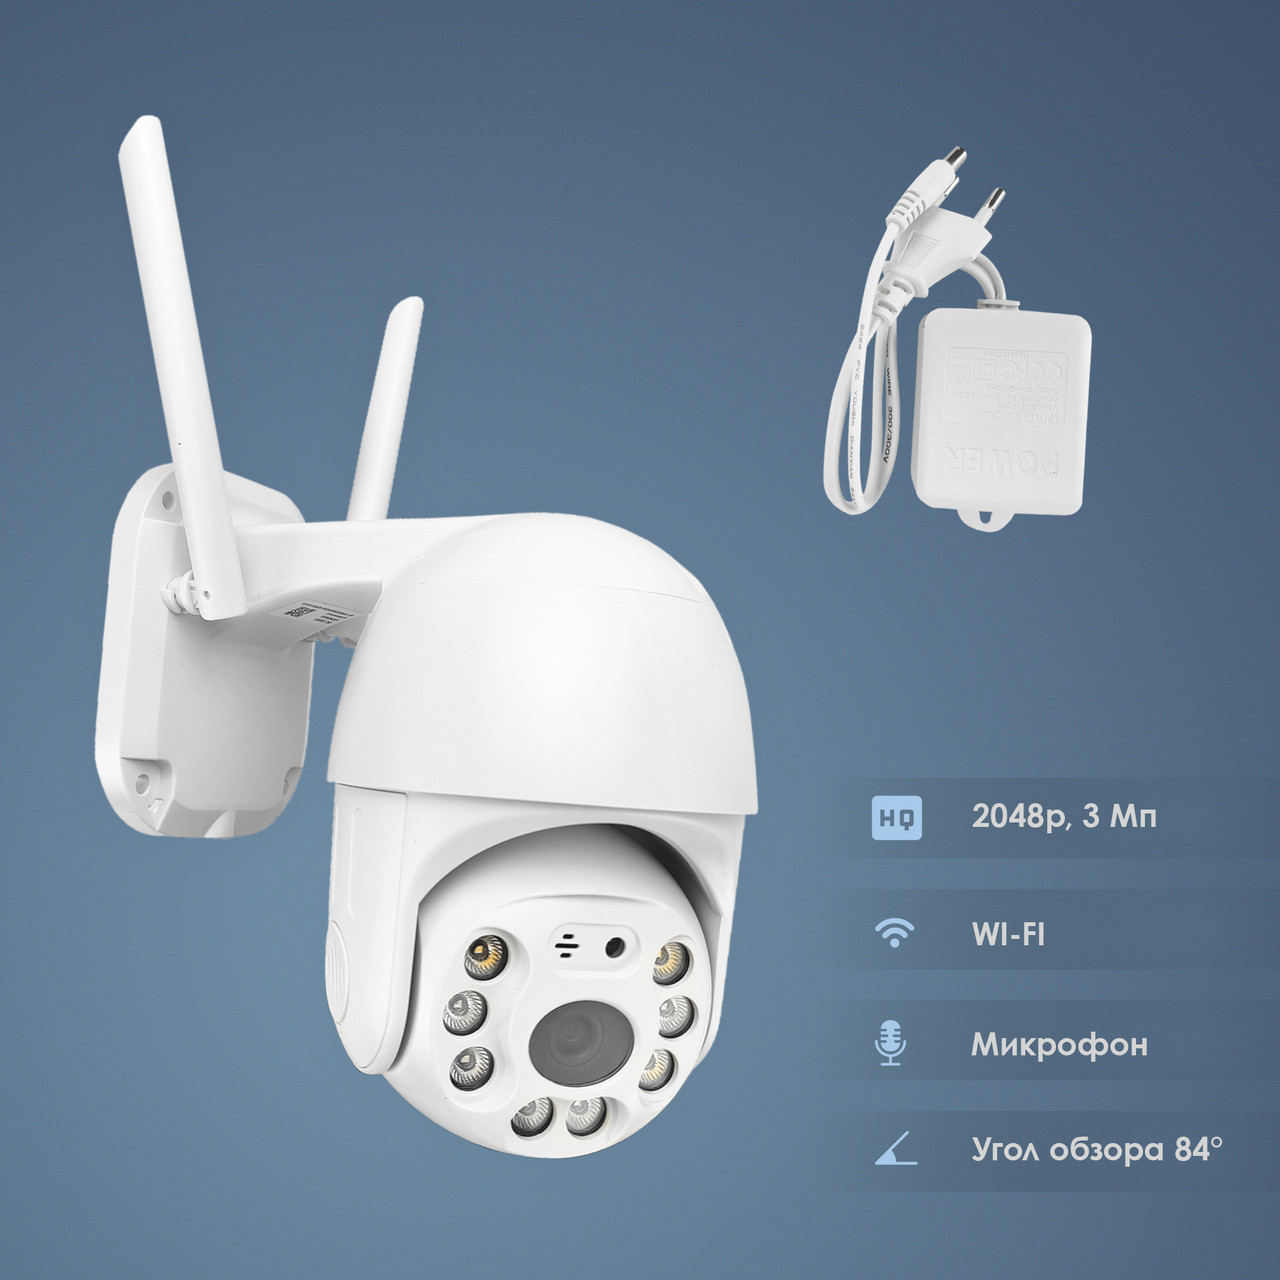 Вулична поворотна IP камера відеоспостереження WiFi HD-63 камера вайфай зовнішнього спостереження для будинку